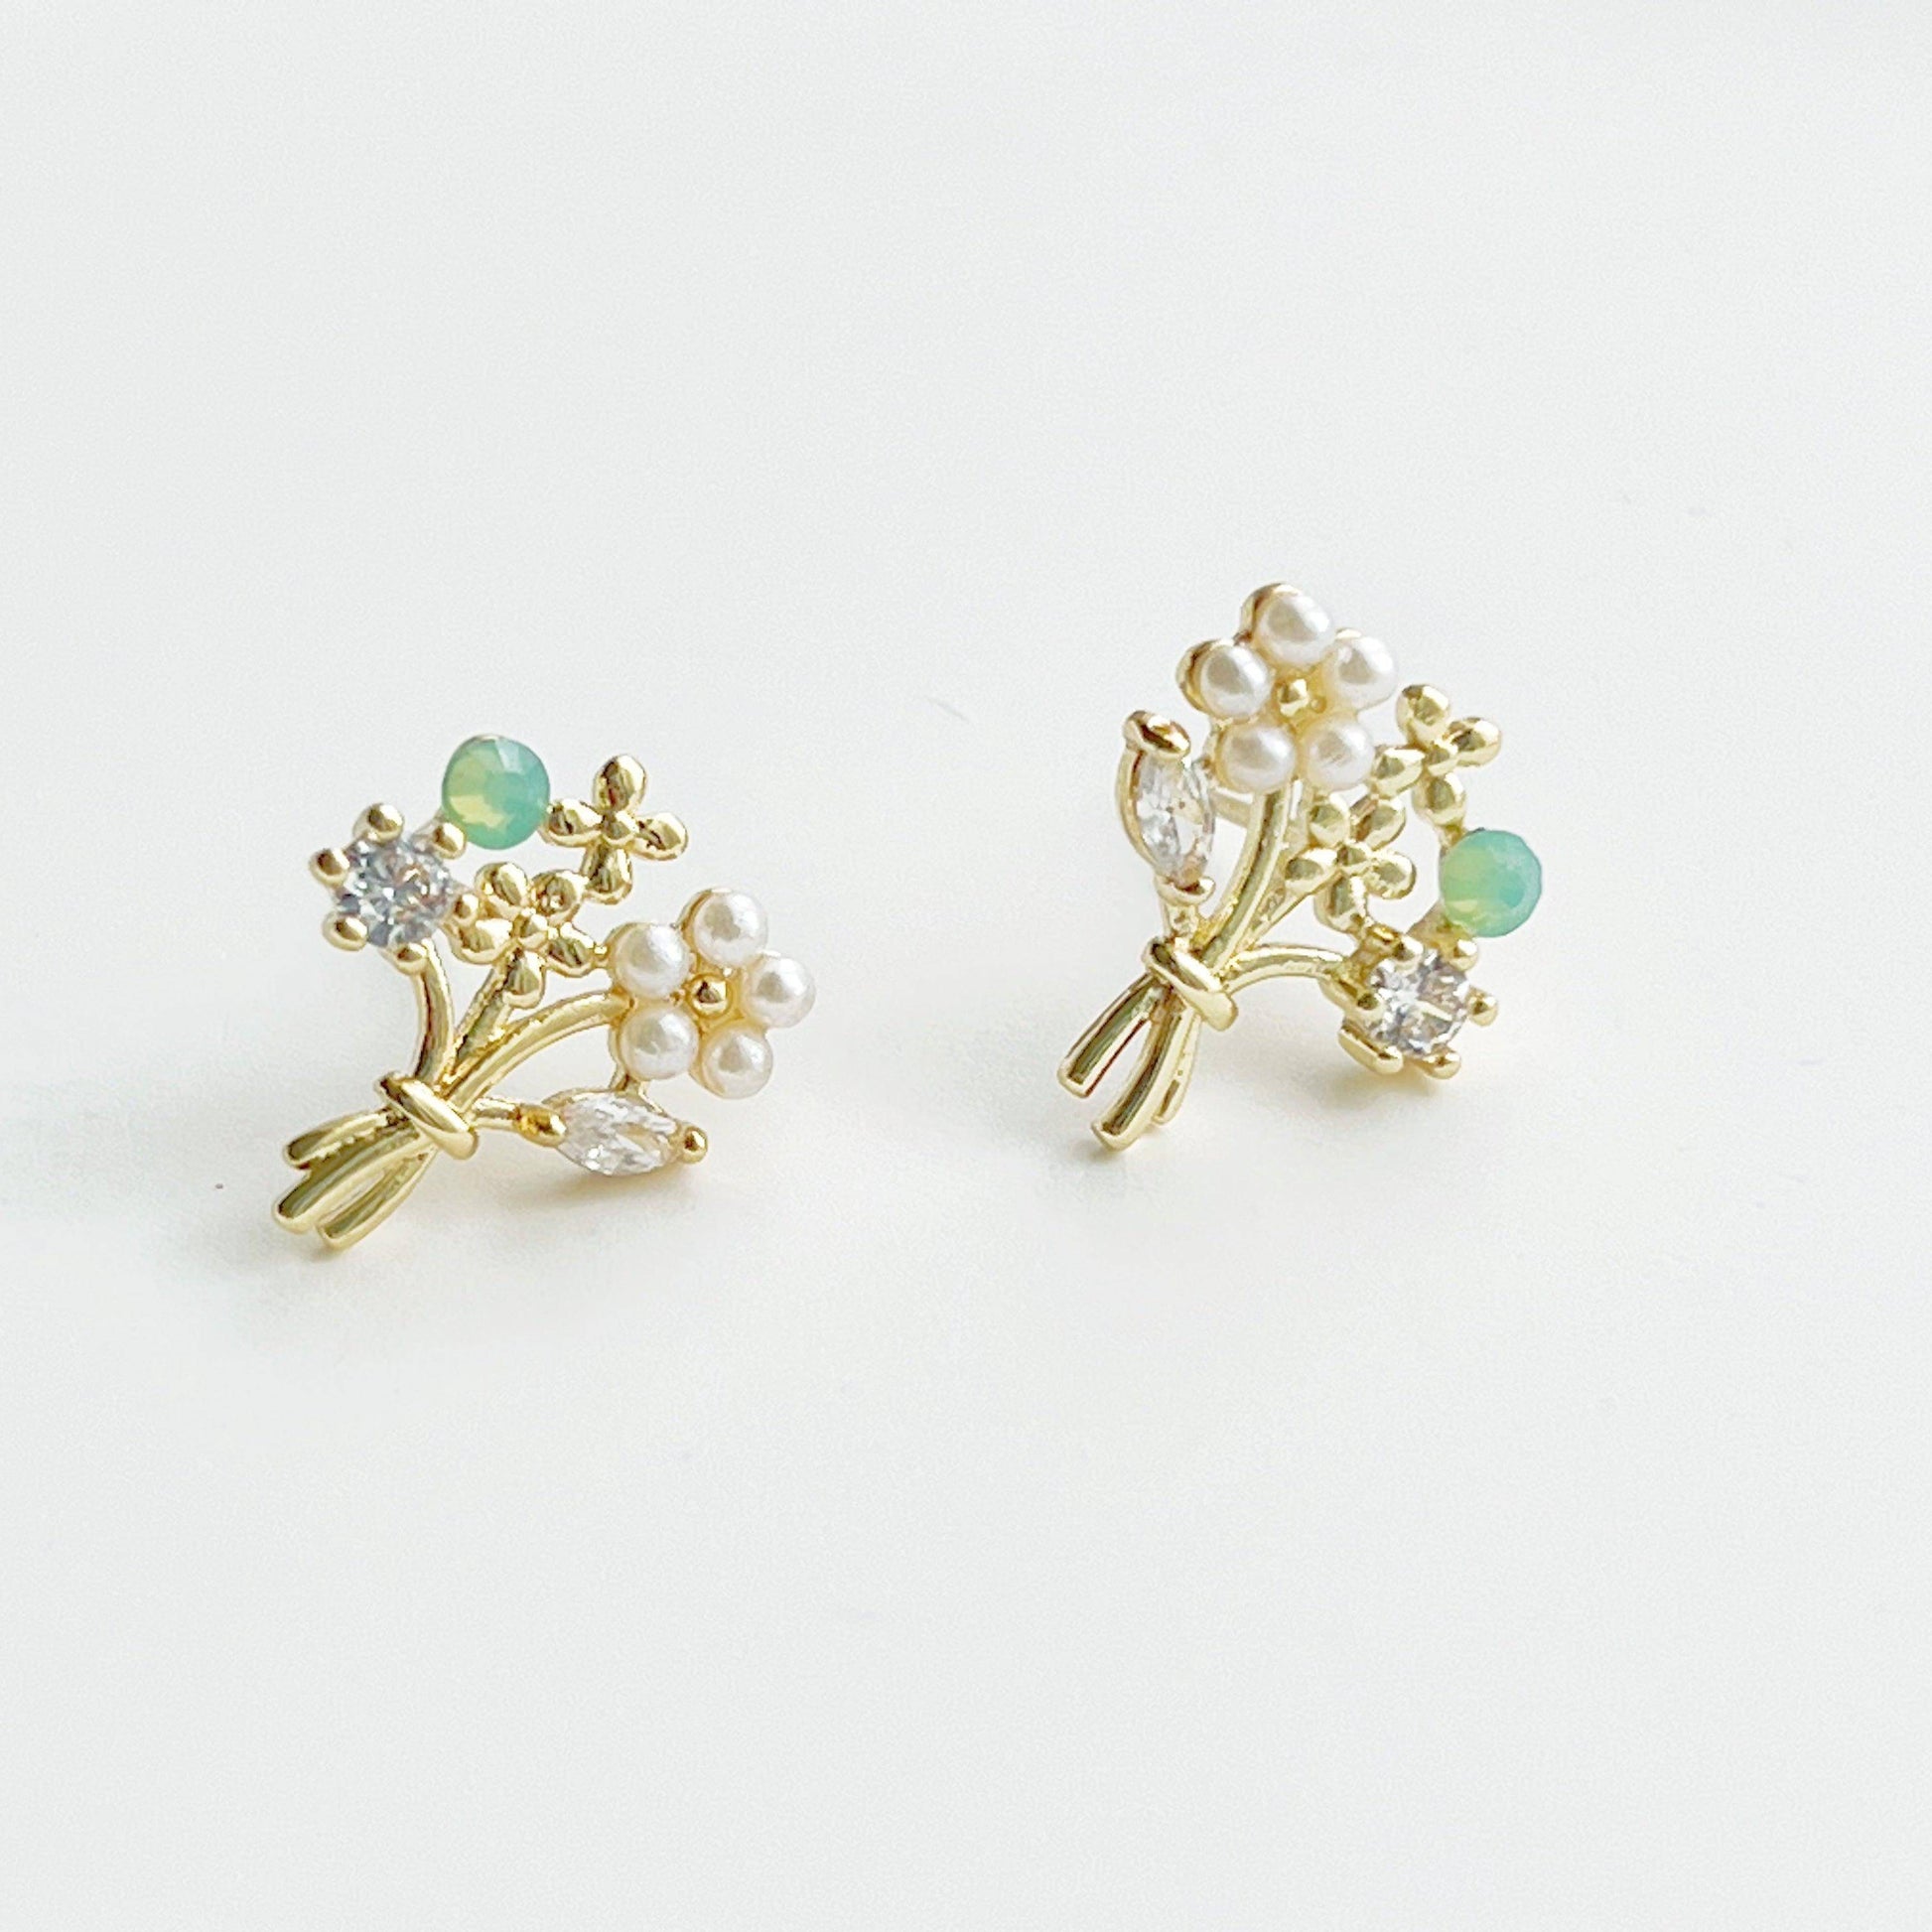 Flower Bouquet Earrings - Gold Flowers with Green Crystal Stud Earrings-Ninaouity